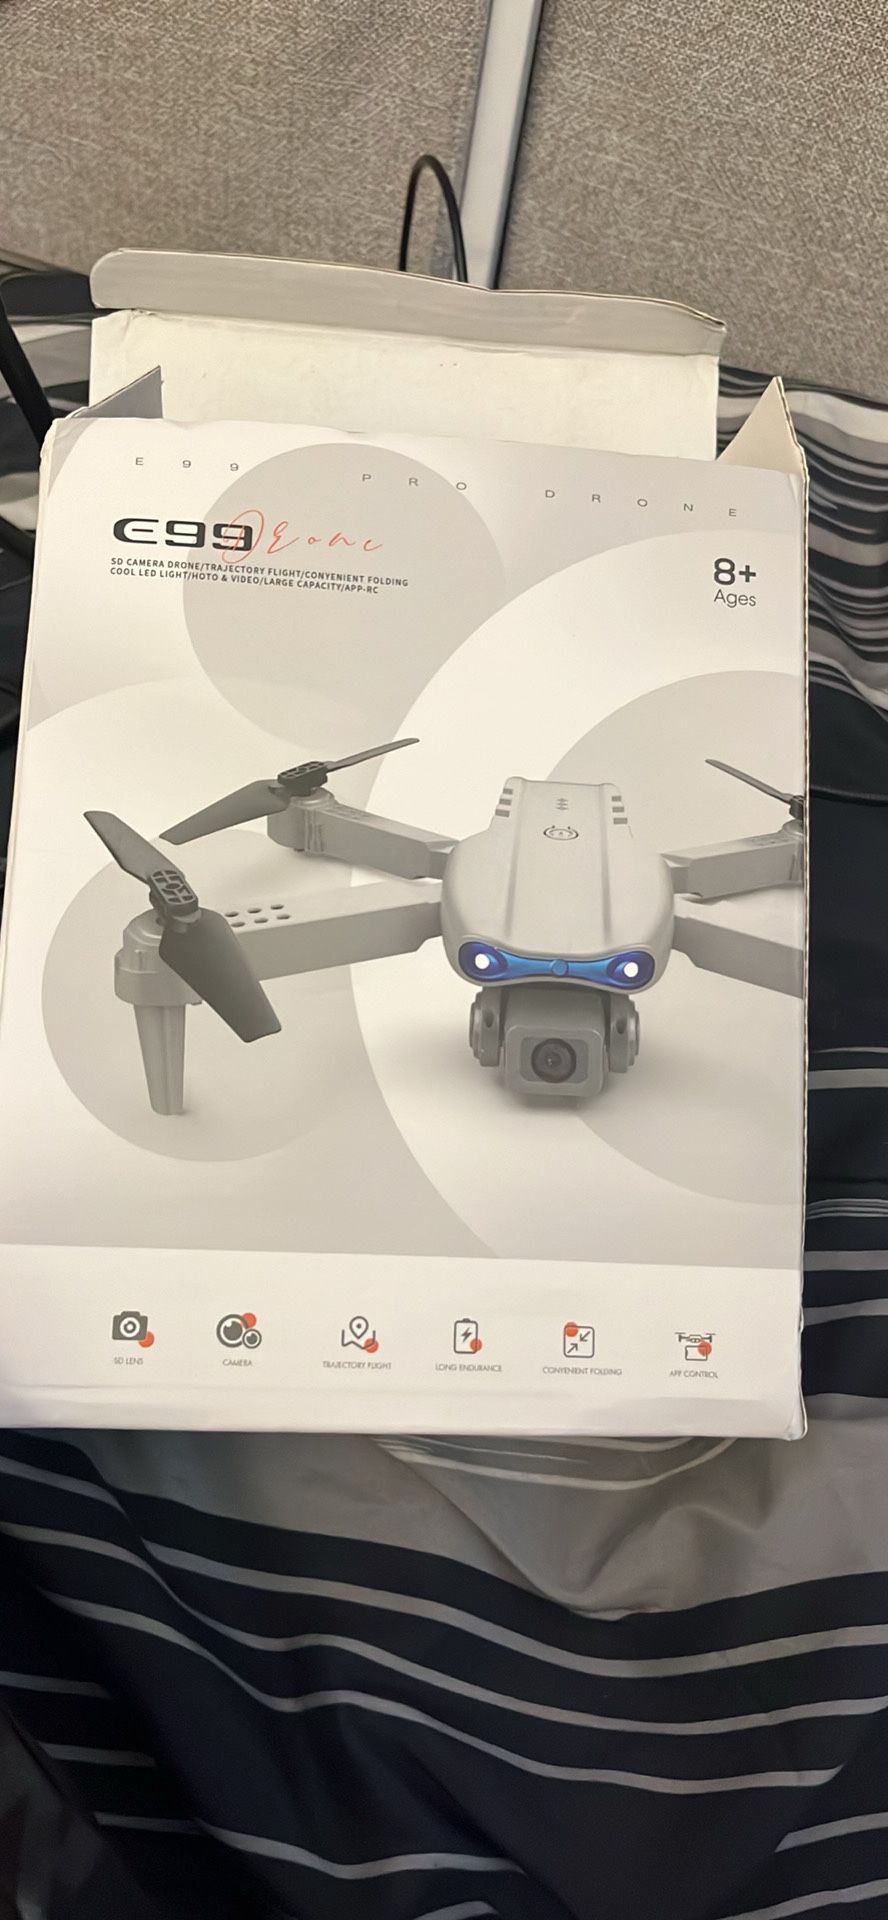 E99 Drone 